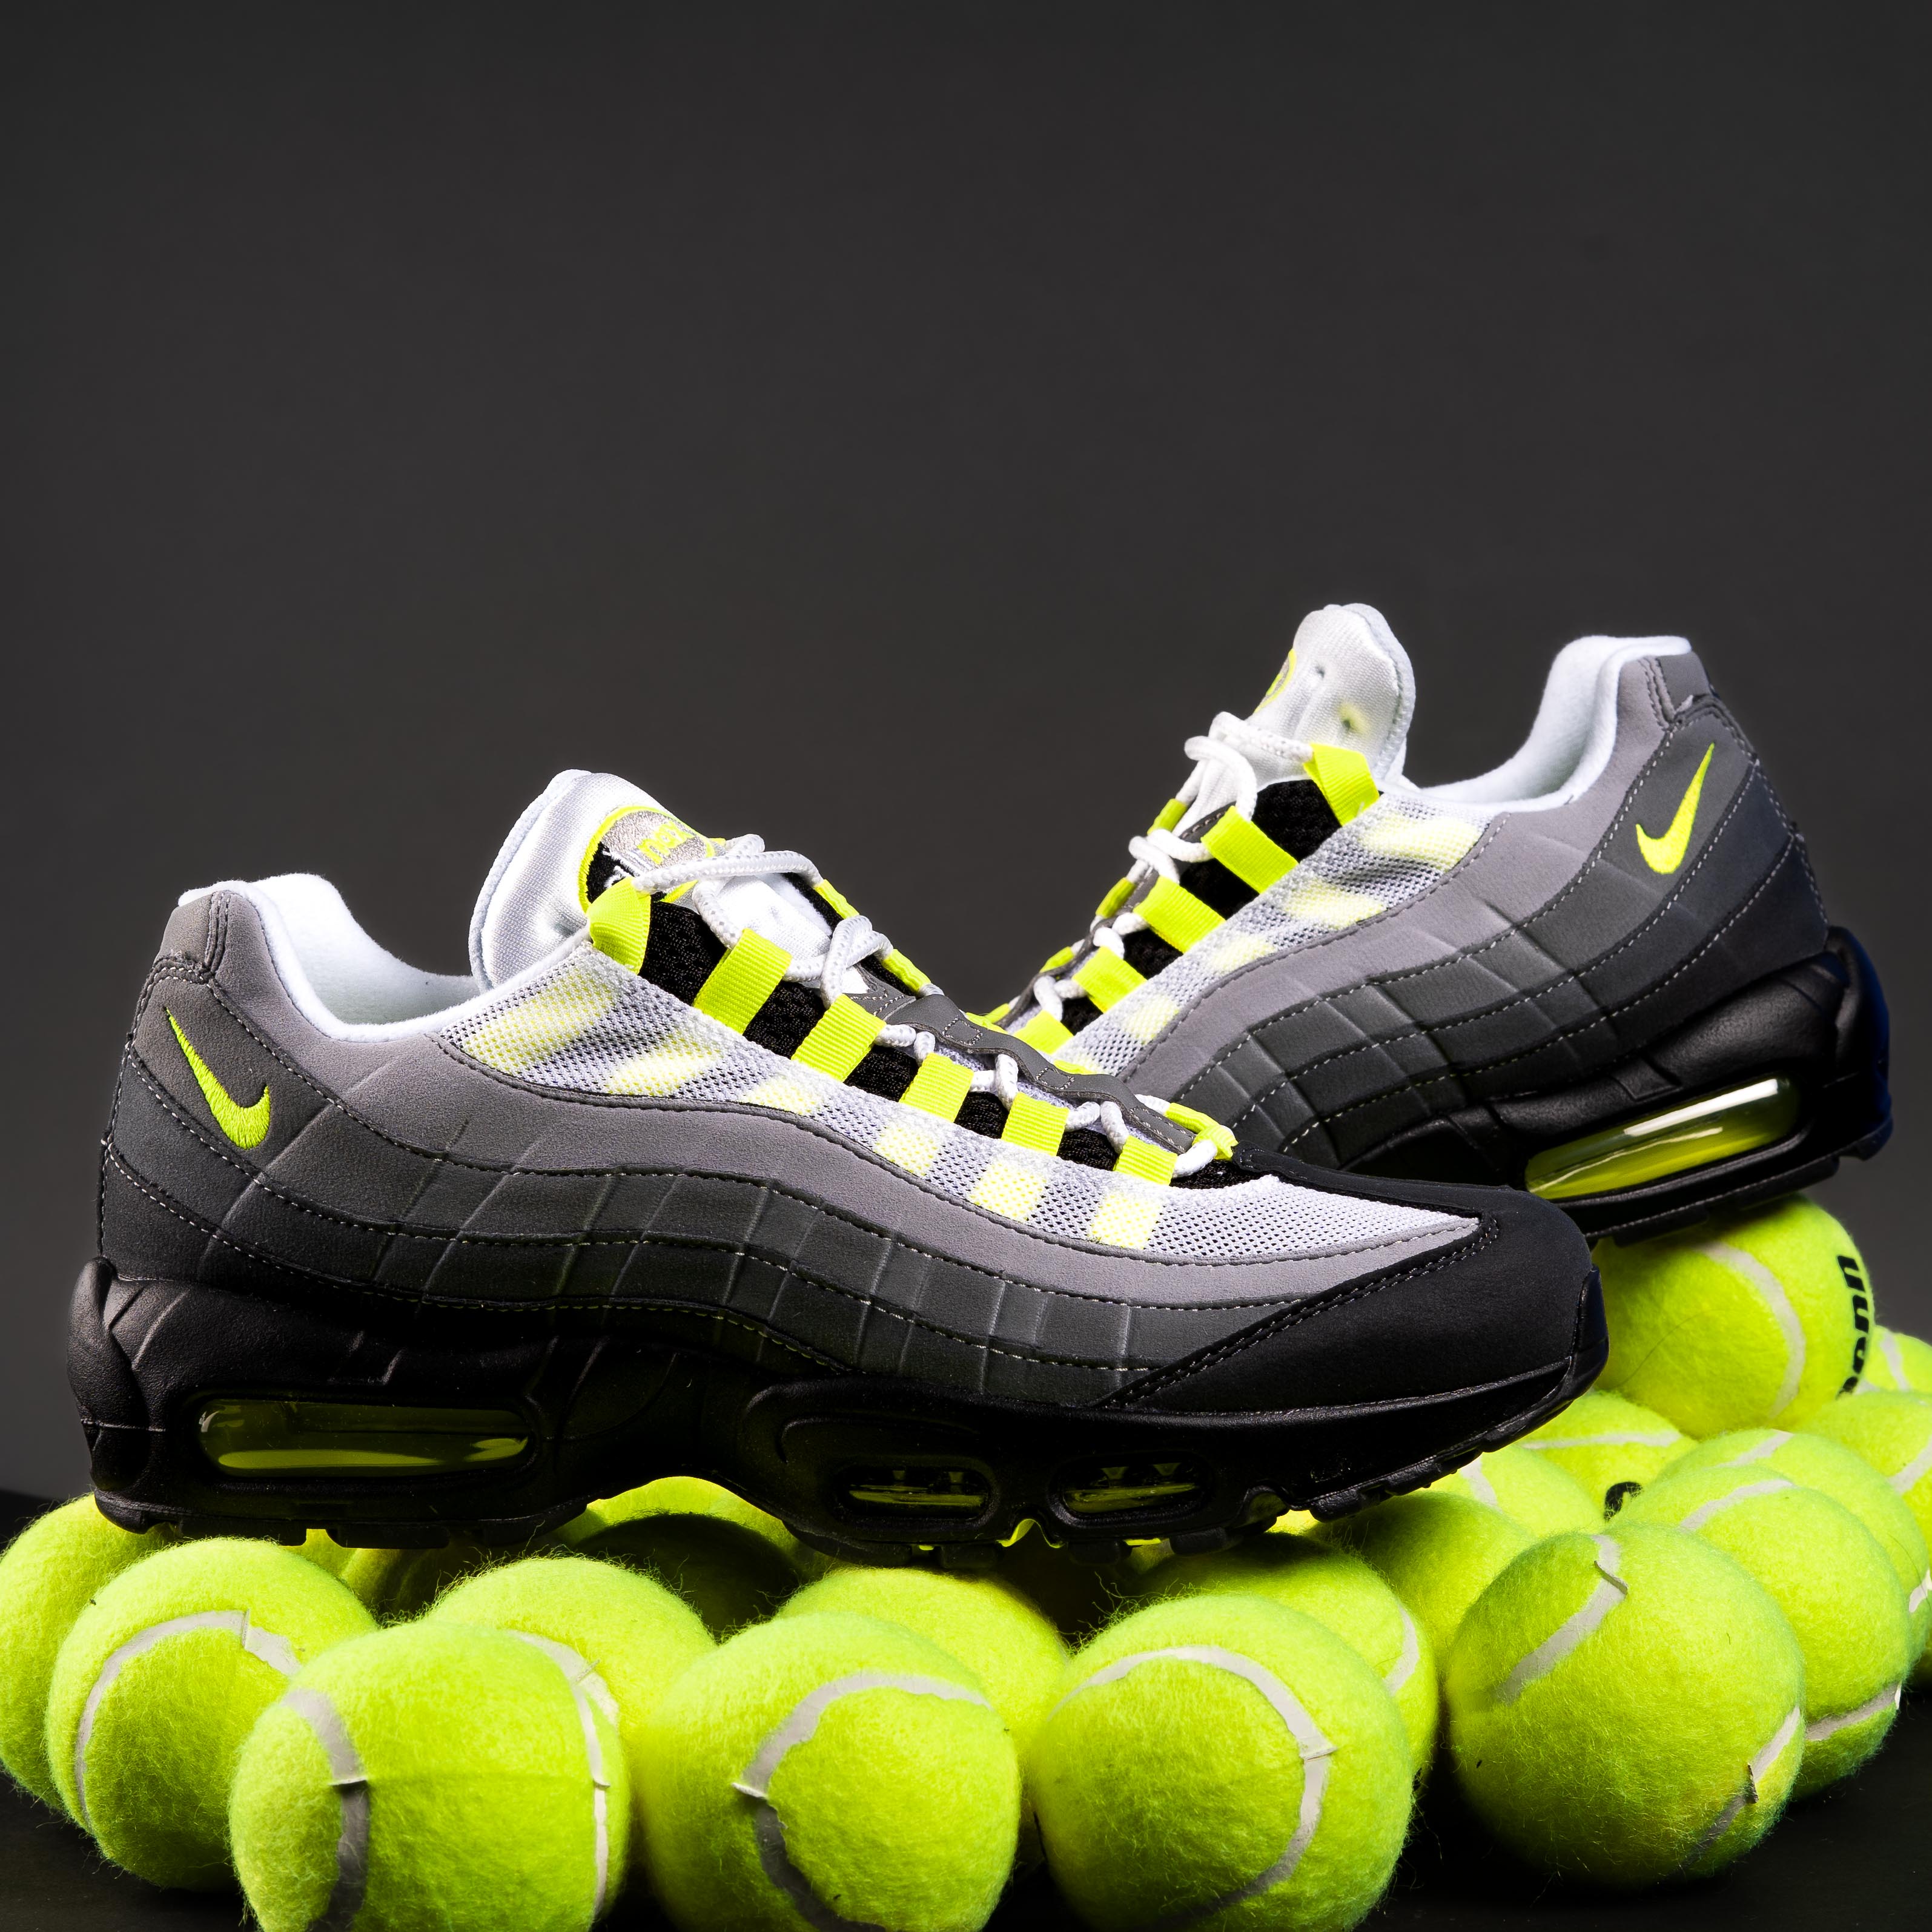 Nike Air Max 95 “Neon”